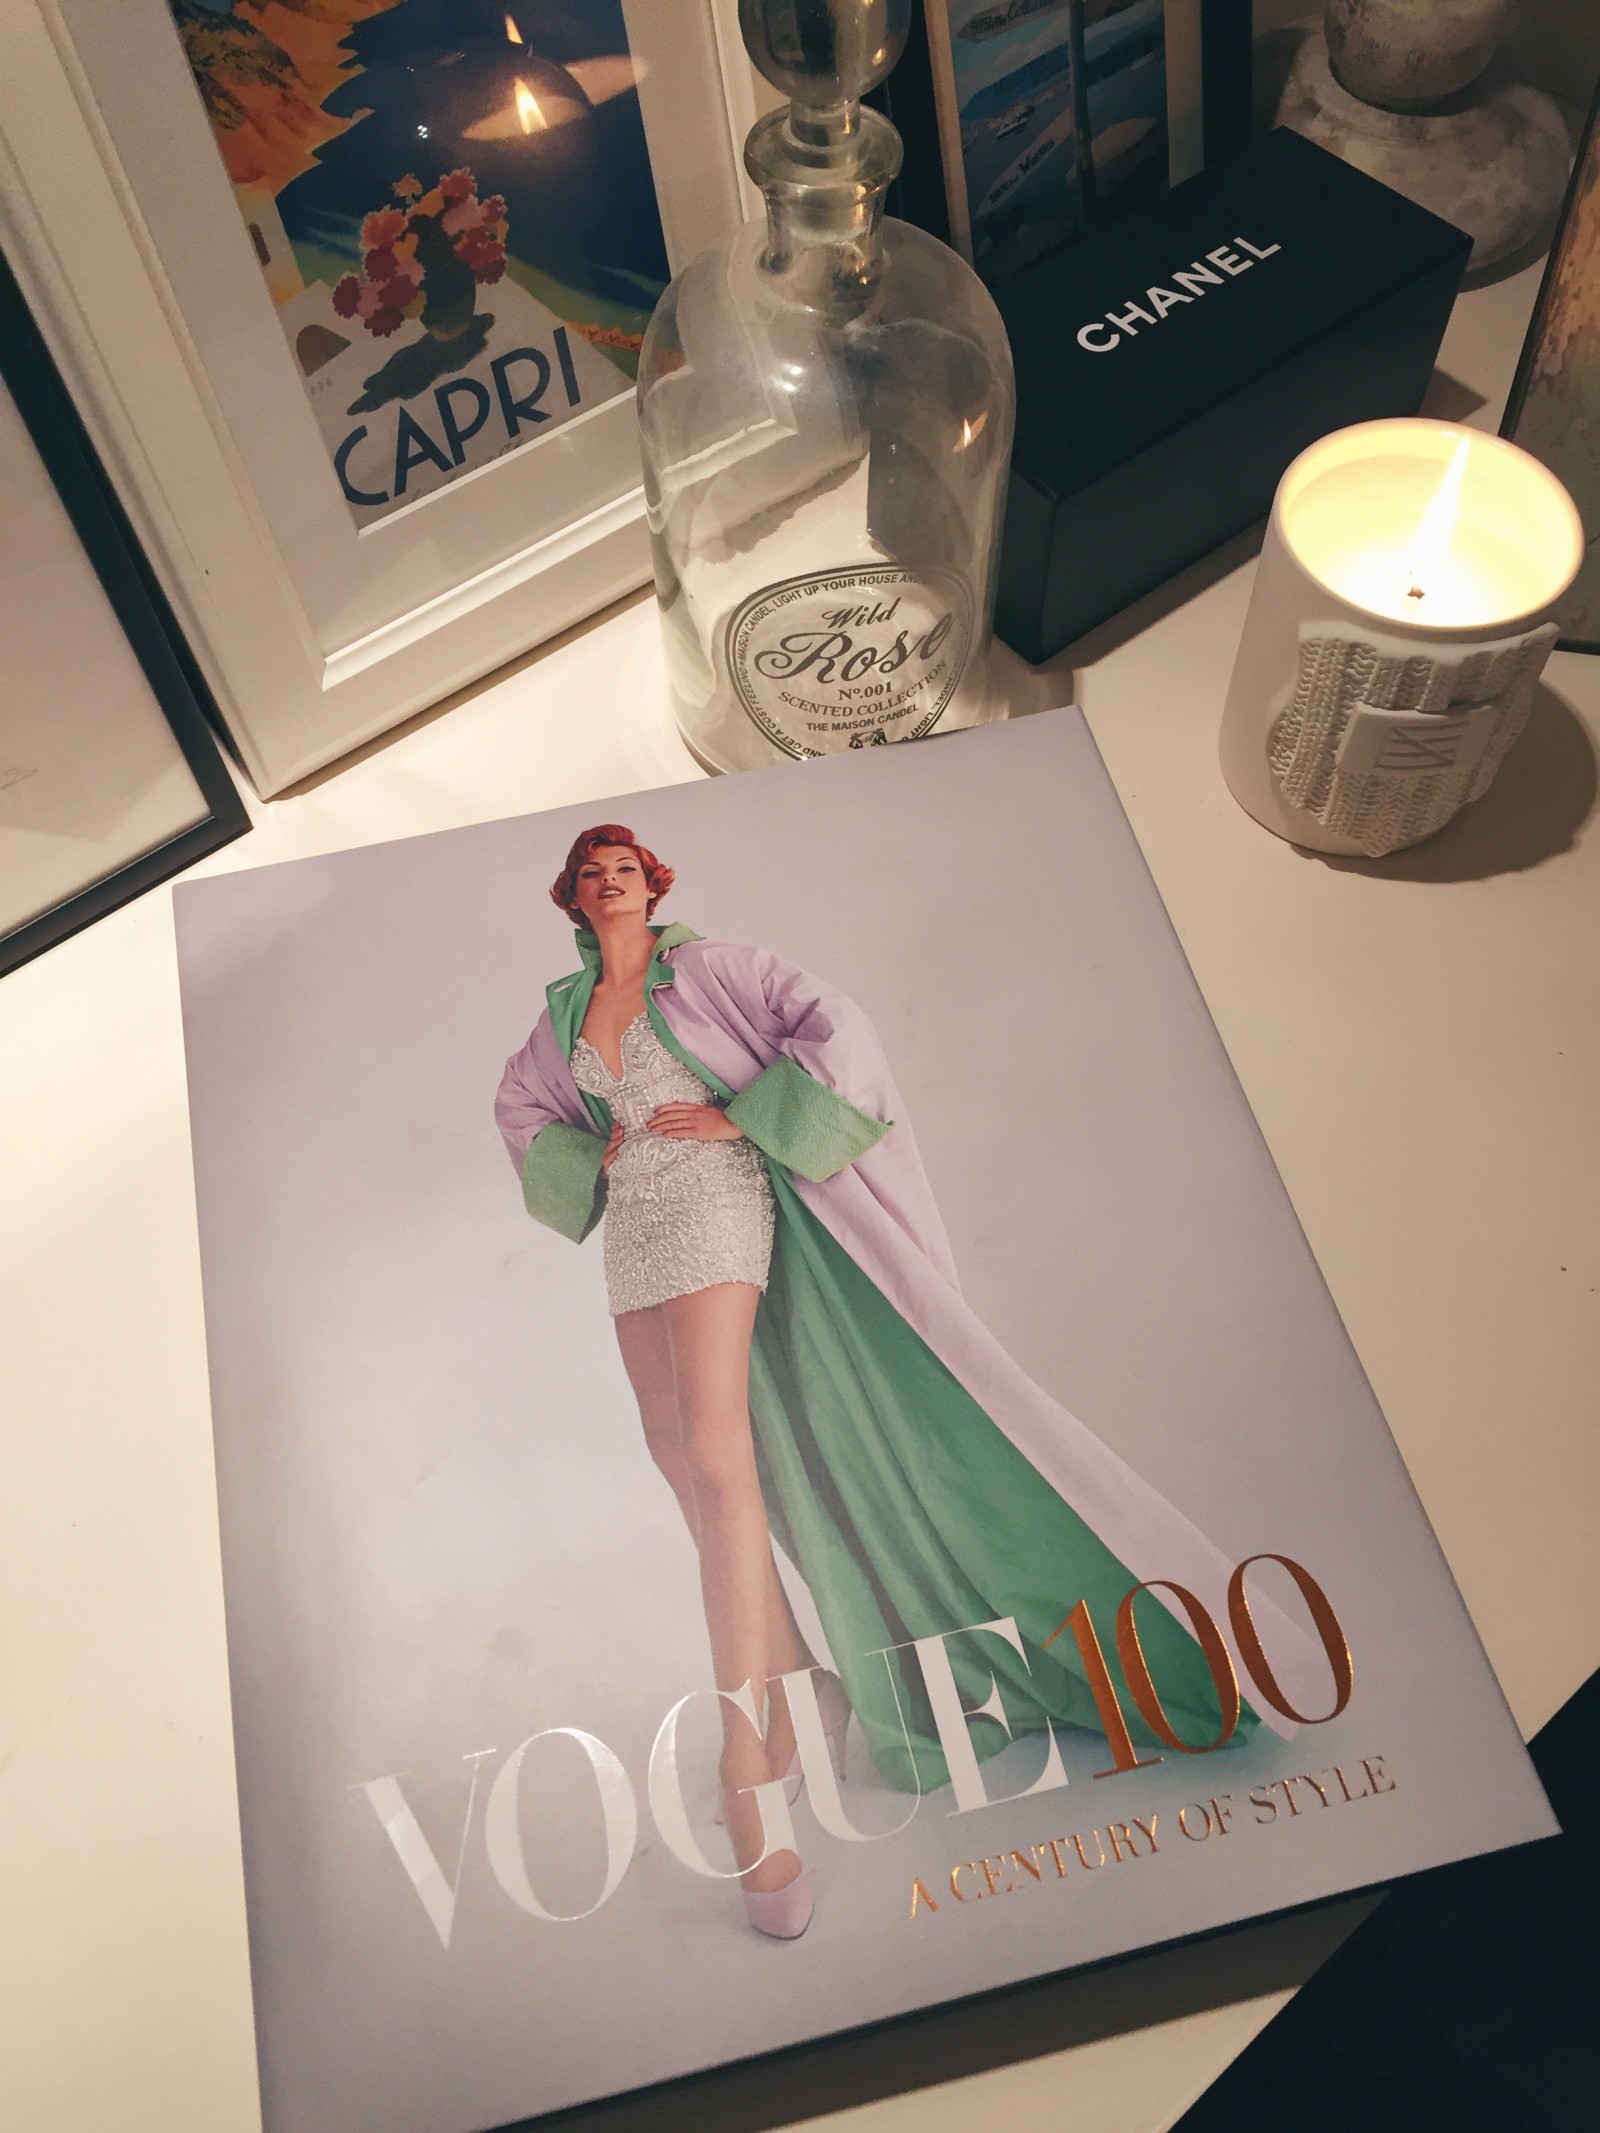 Vogue 100: A Celebration of Style 